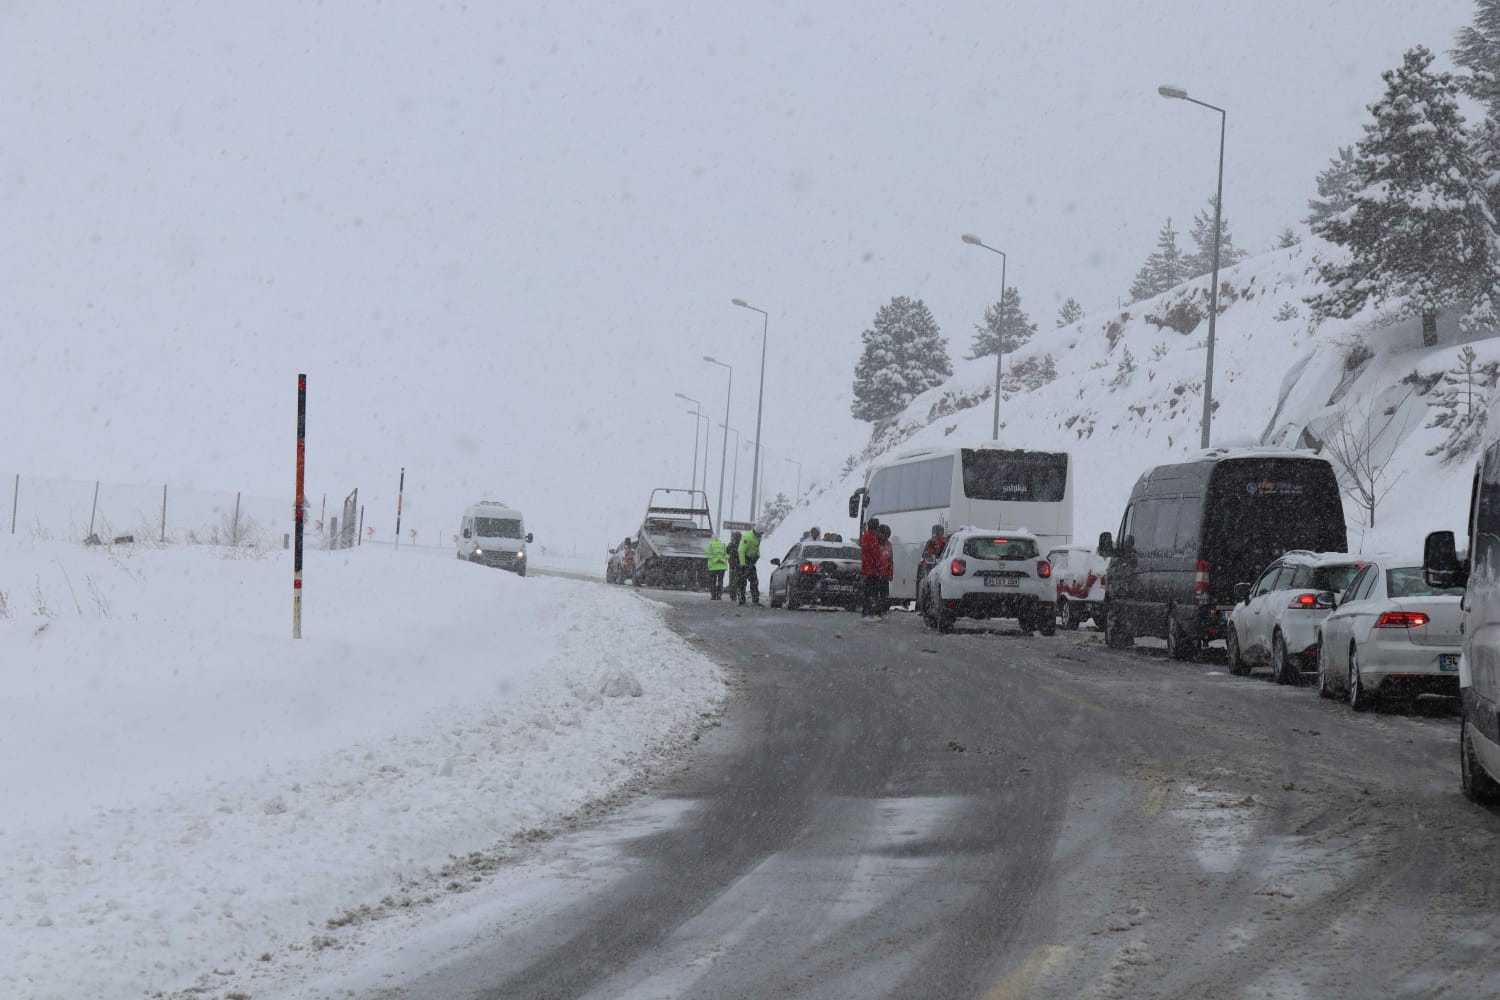 Kayseri’de kar yağışı hayatı olumsuz etkiledi #kayseri